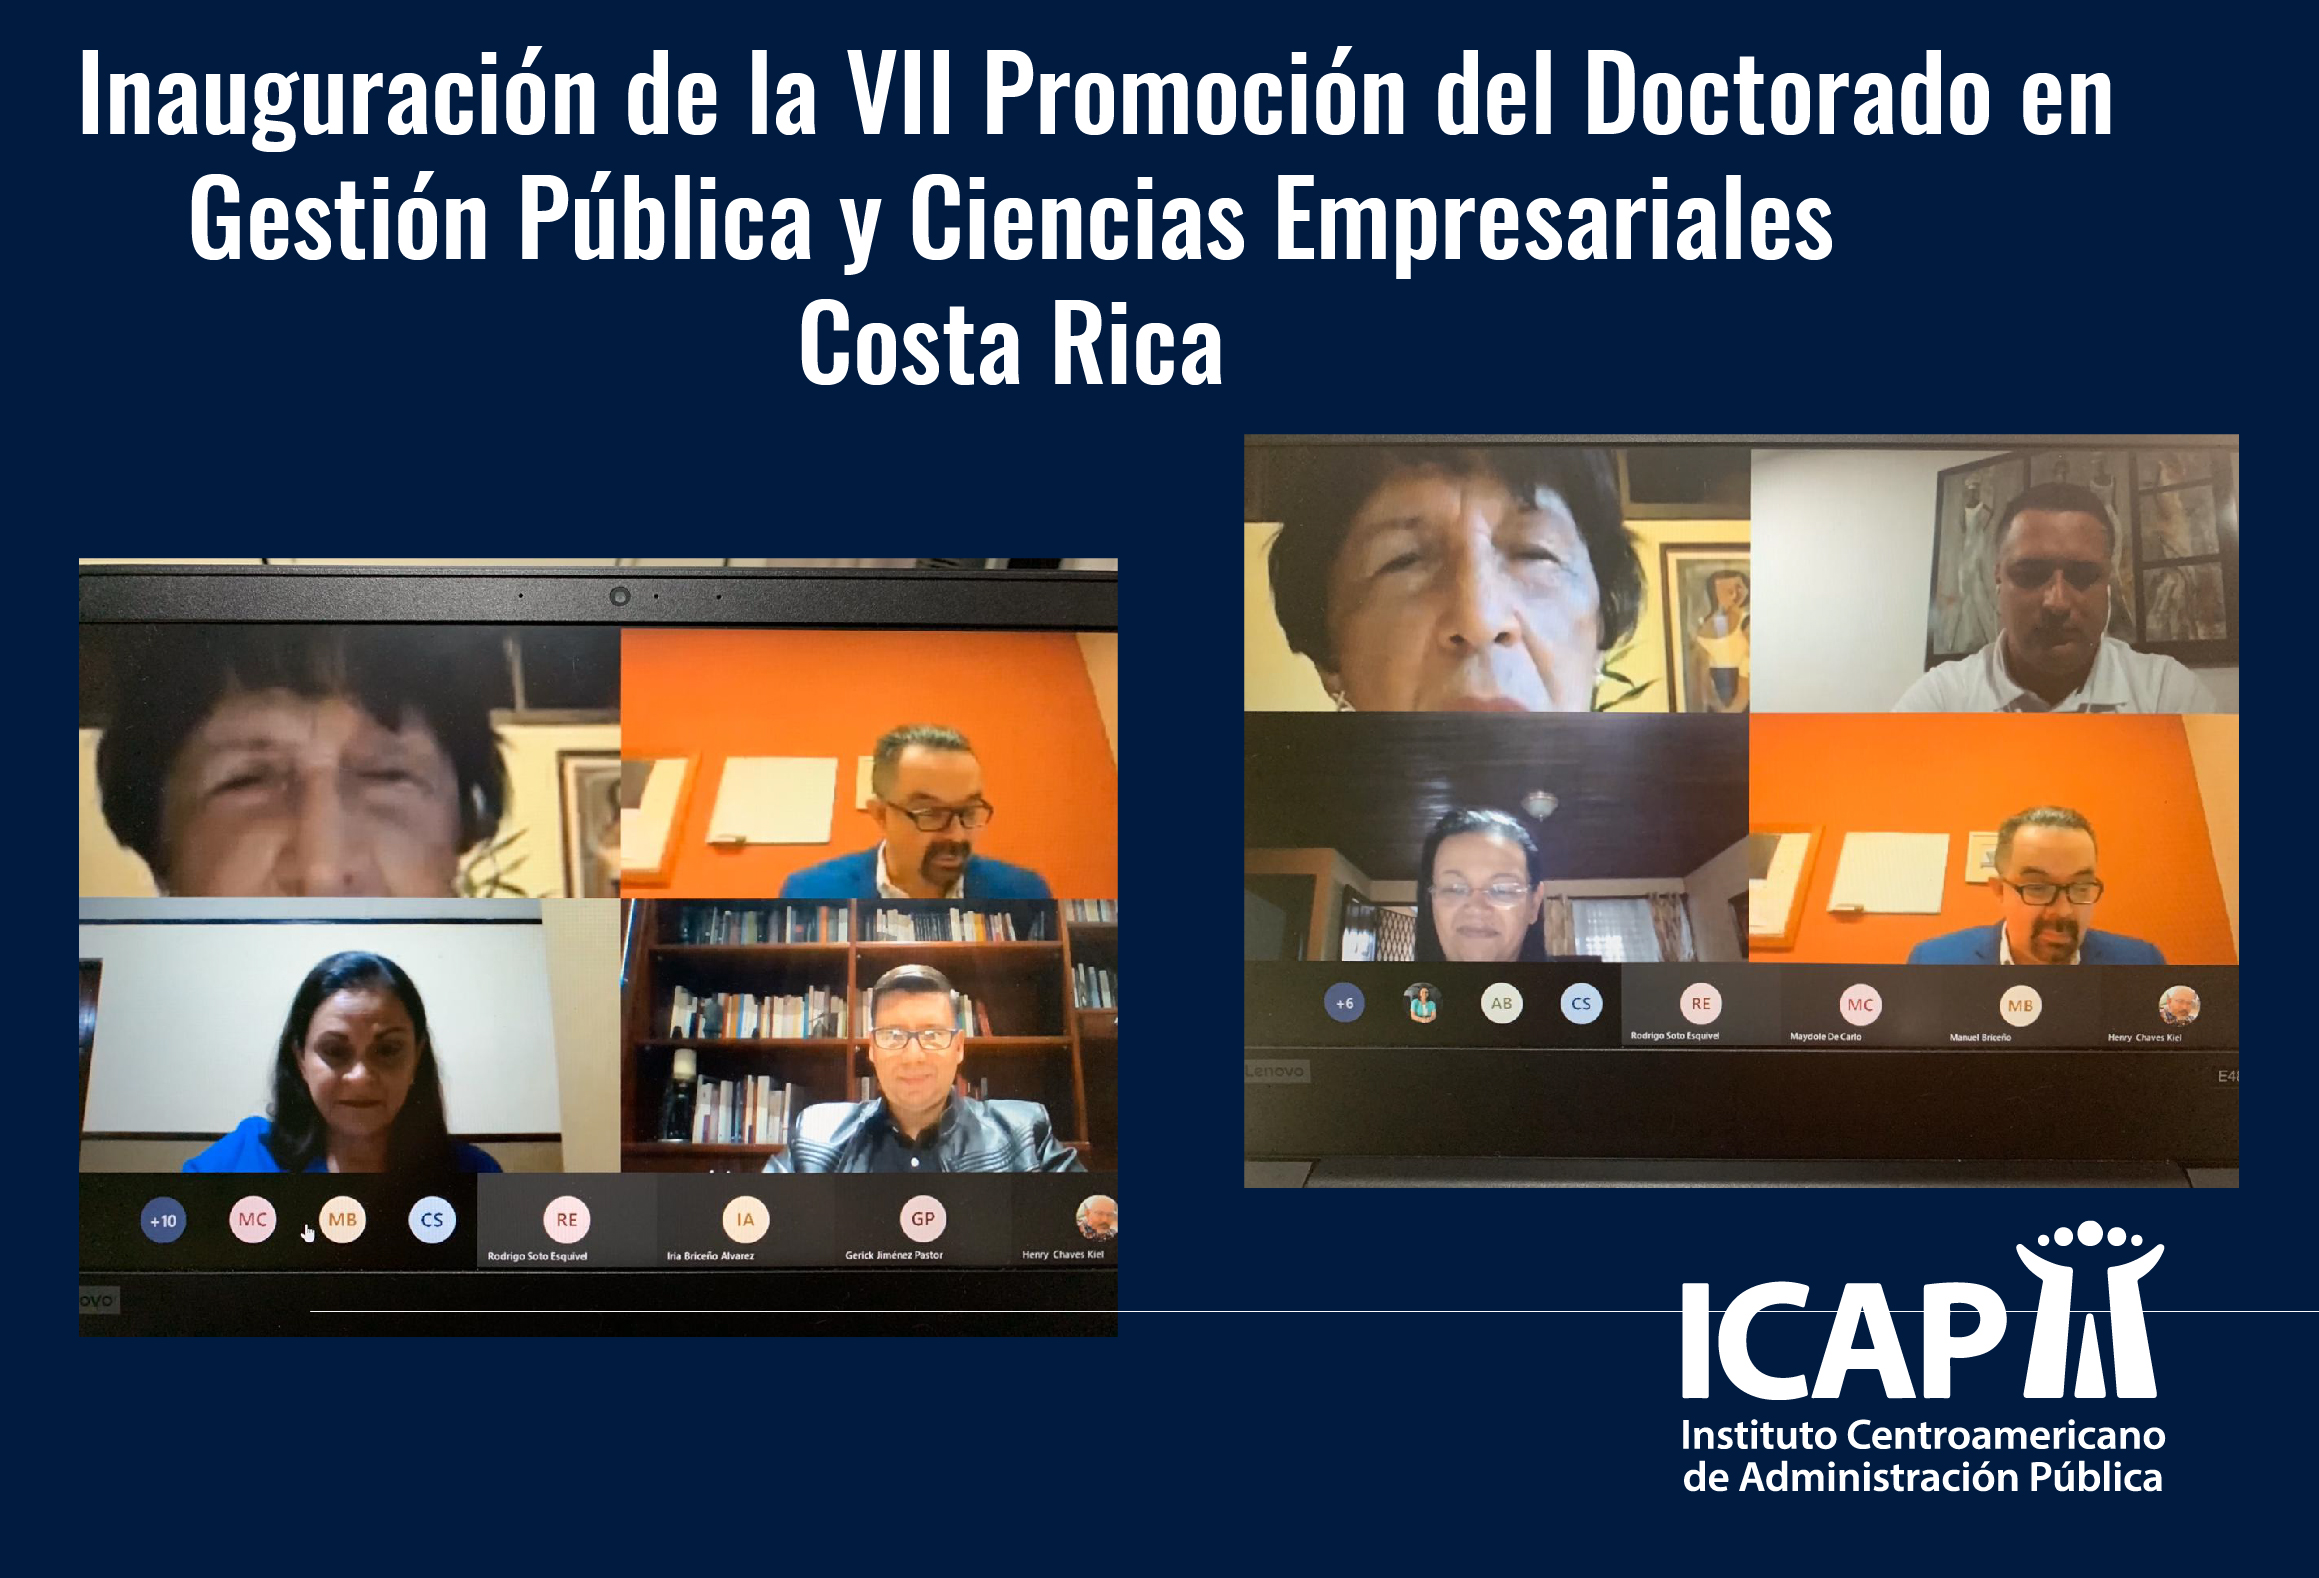 Inició promoción virtual del Doctorado en Gestión Pública y Ciencias Empresariales en Costa Rica